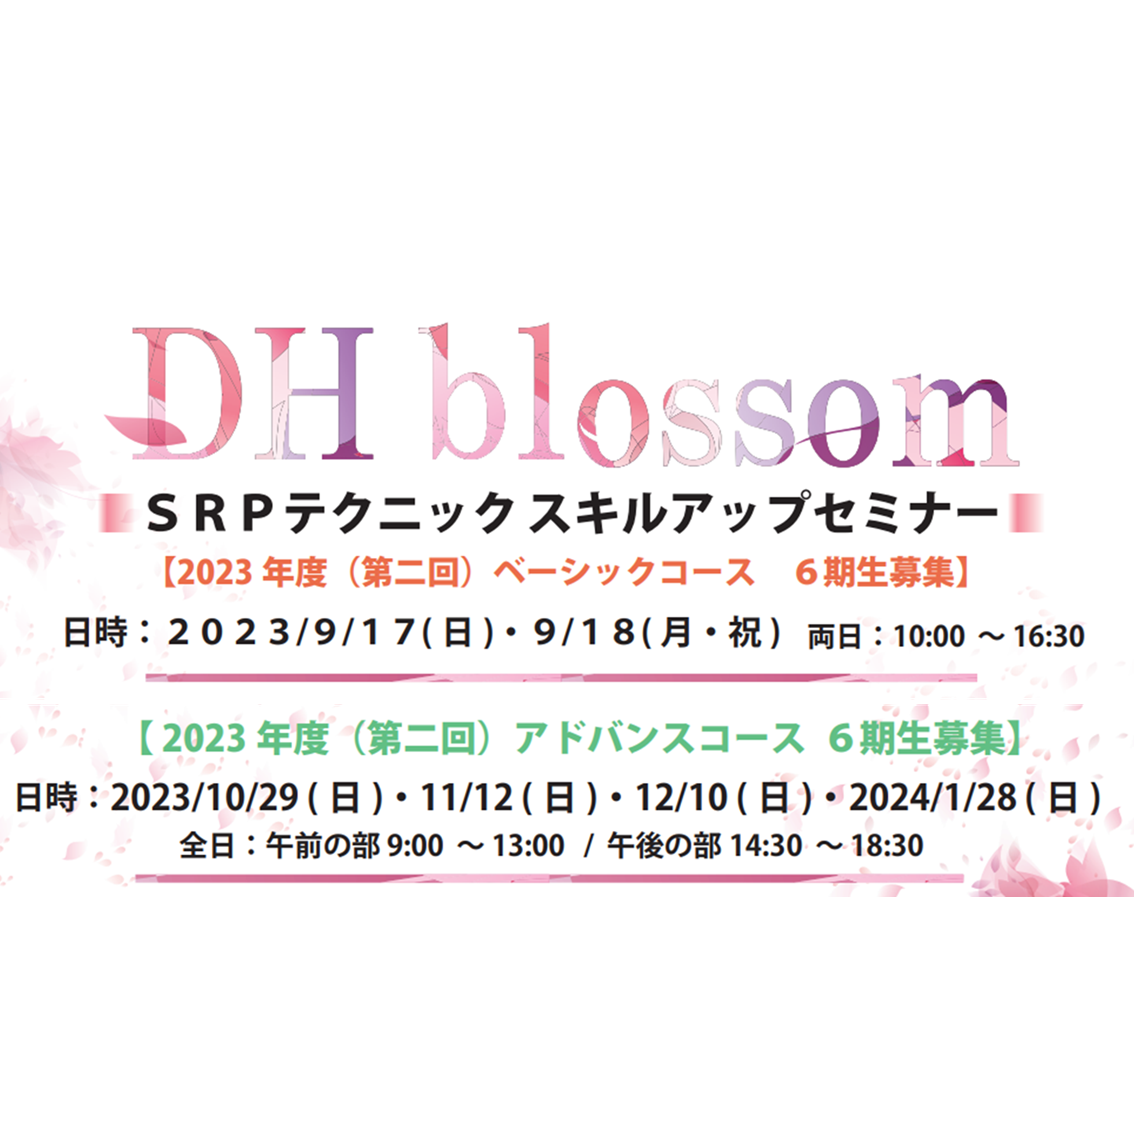 【大阪開催】DHblossom SRPテクニックスキルアップセミナー(6期生募集)